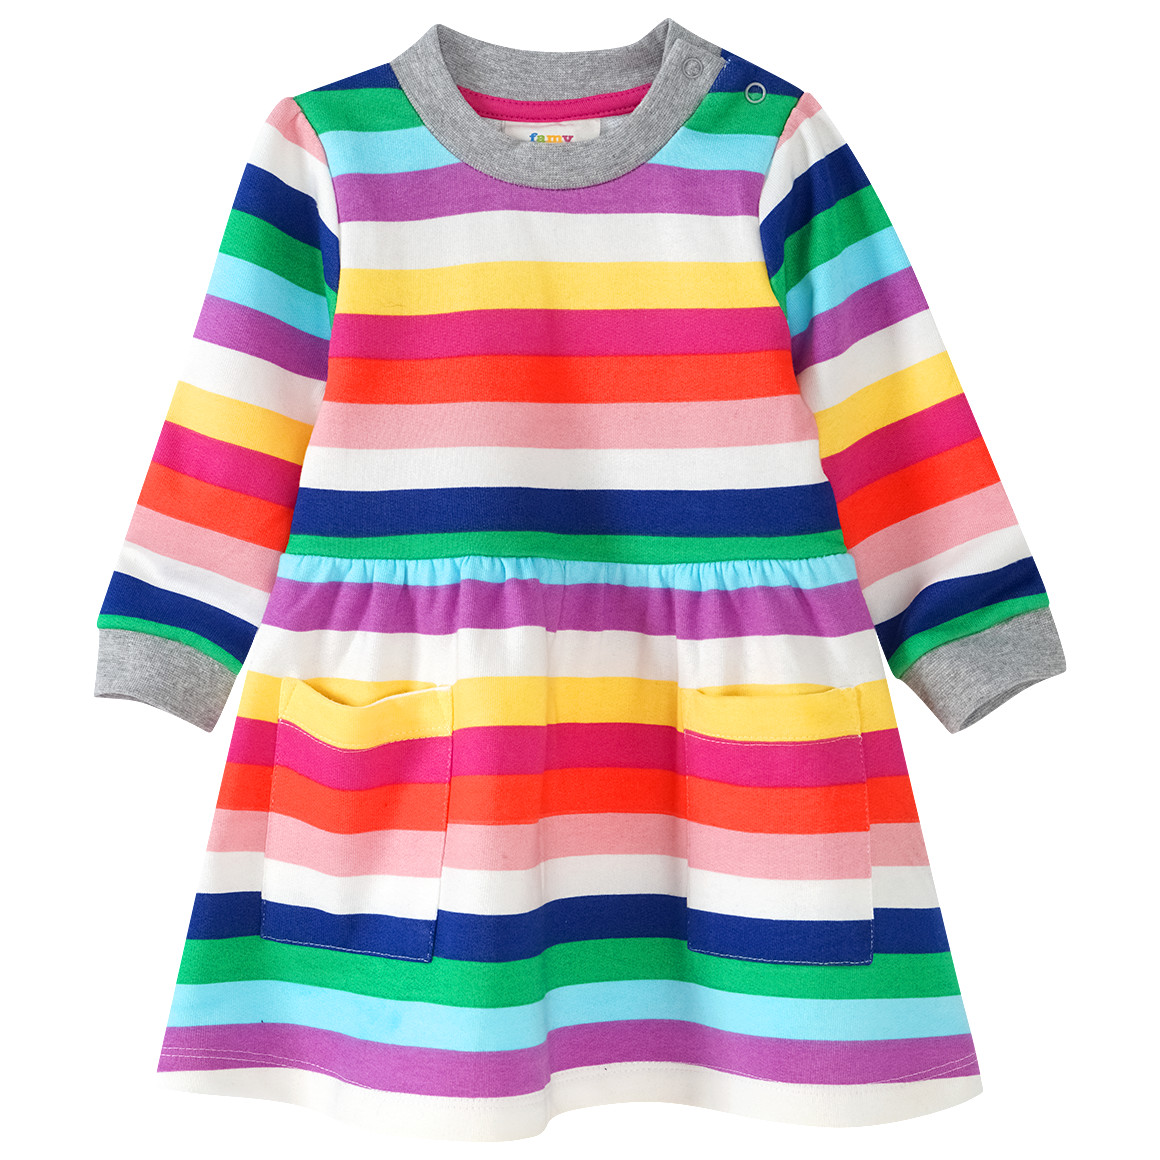 Baby Sweatkleid in bunten Regenbogenfarben von Topomini